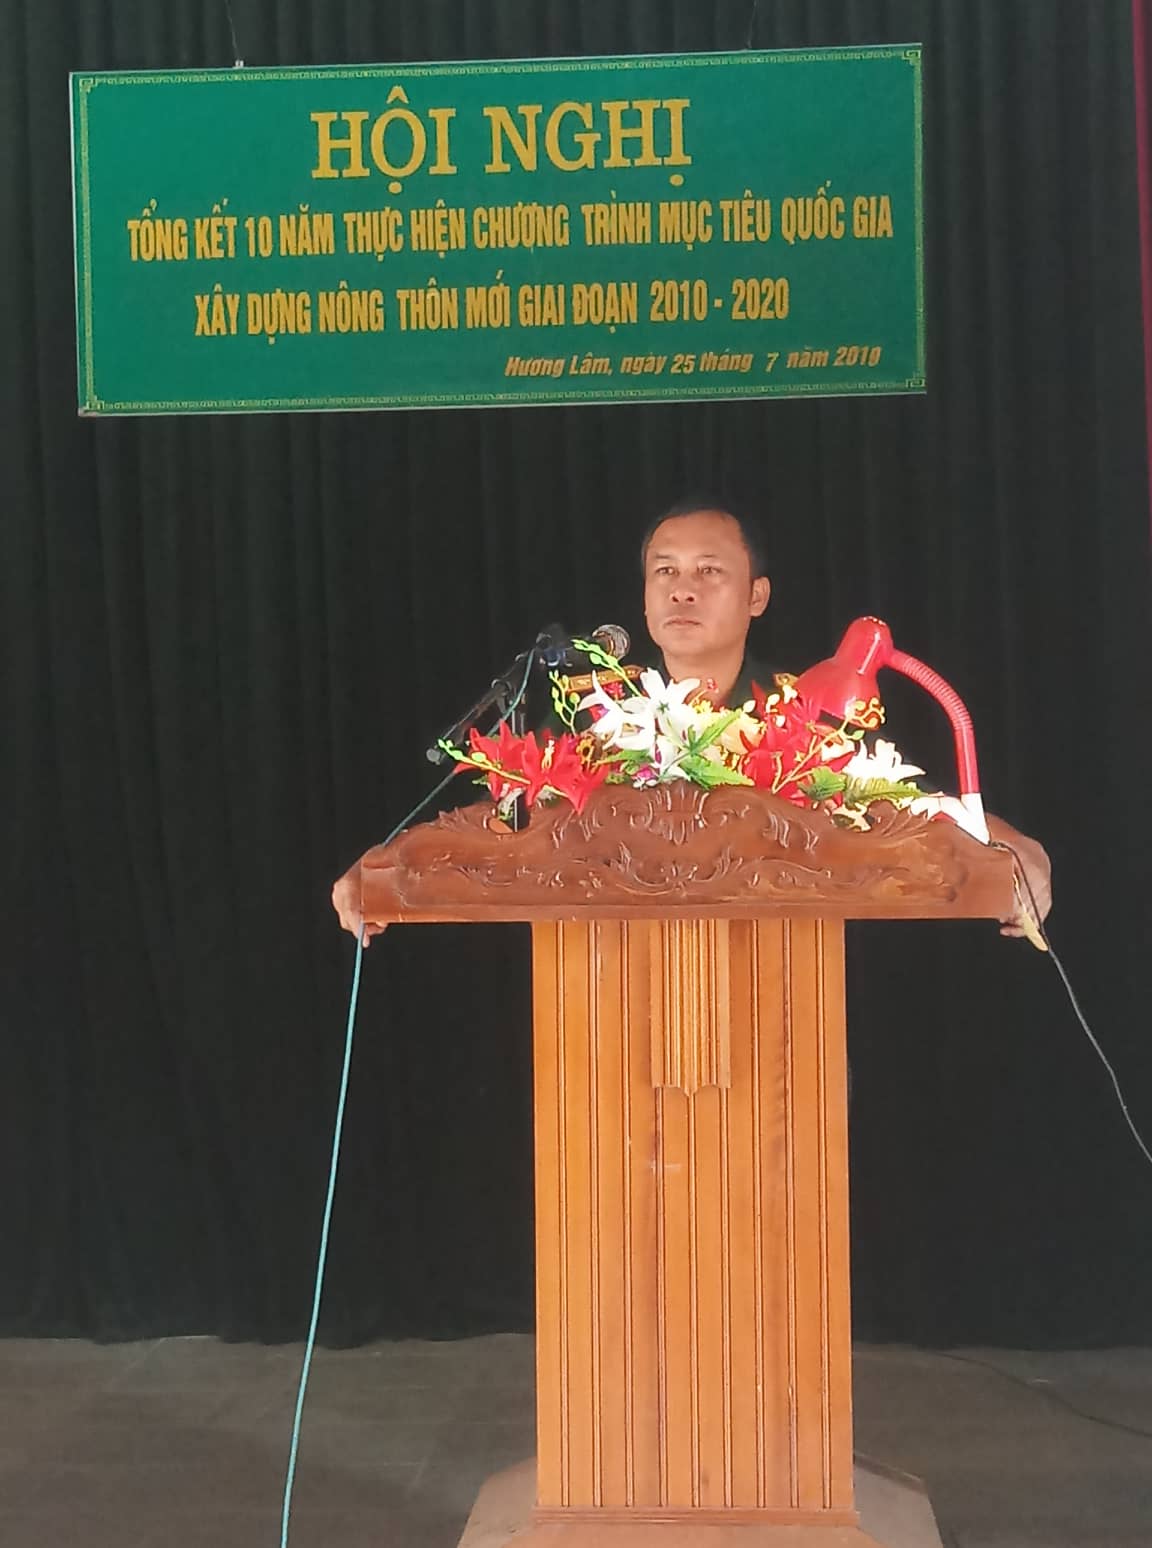 Ban chỉ đạo NTM xã Hương Lâm tổ chức Hội nghị tổng kết 10 năm xây dựng NTM giai đoạn 2010 - 2020